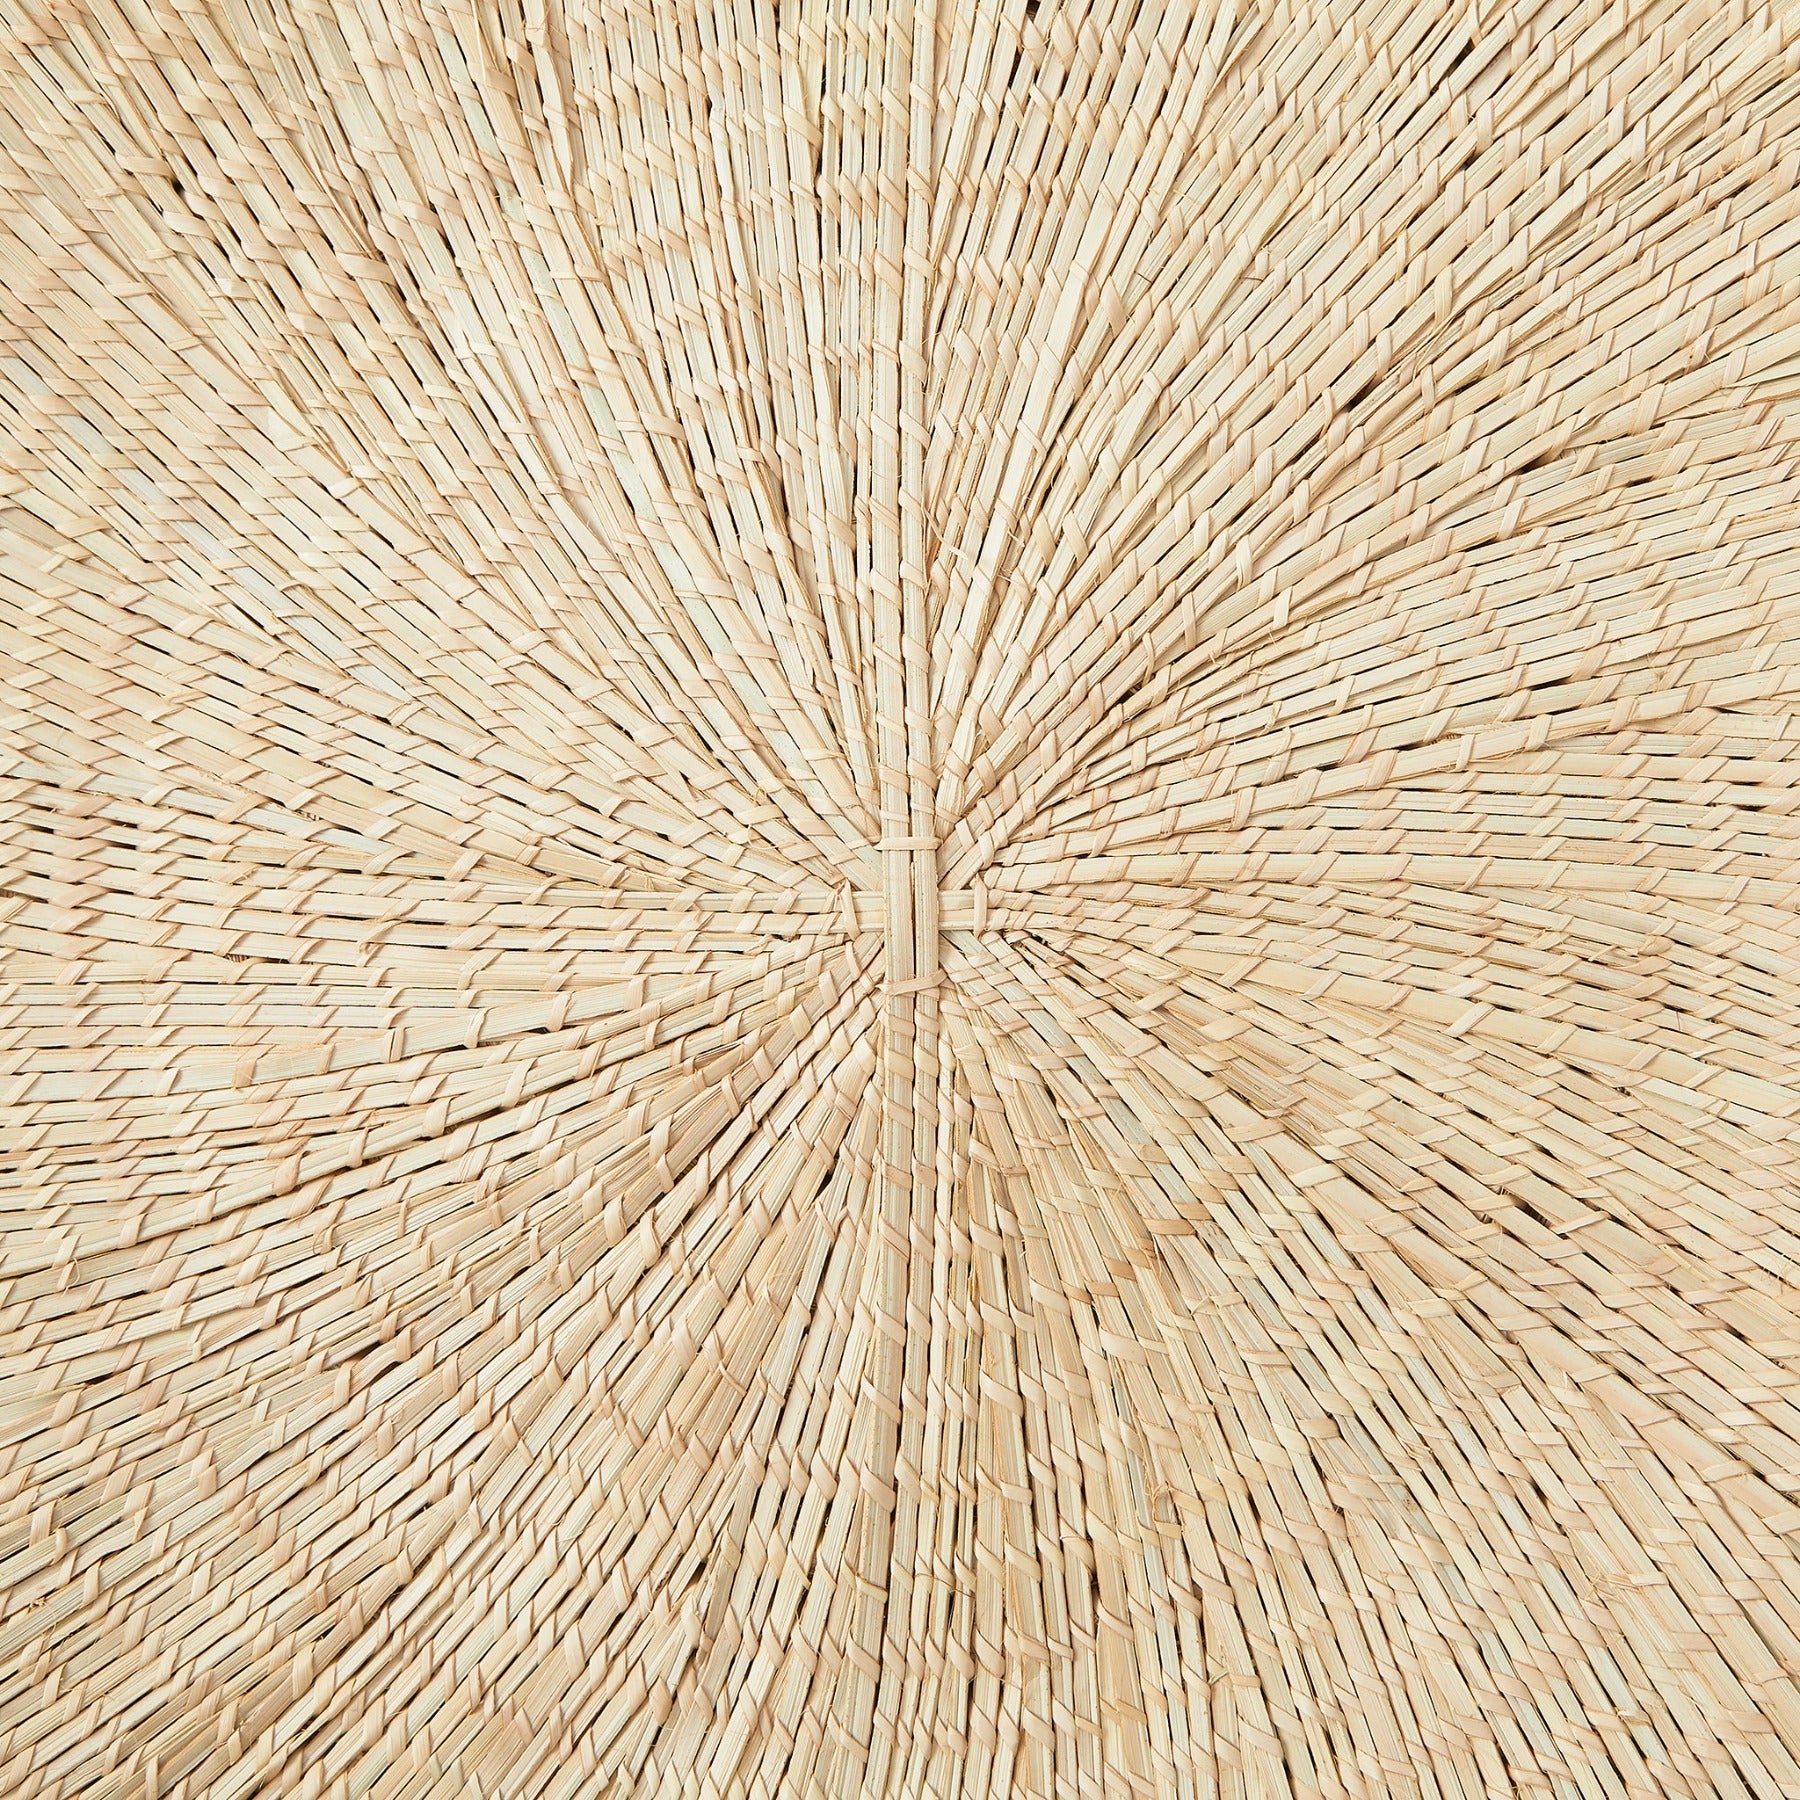 Detailansicht "Sonnenteller" aus Mulaza Palmfaser.